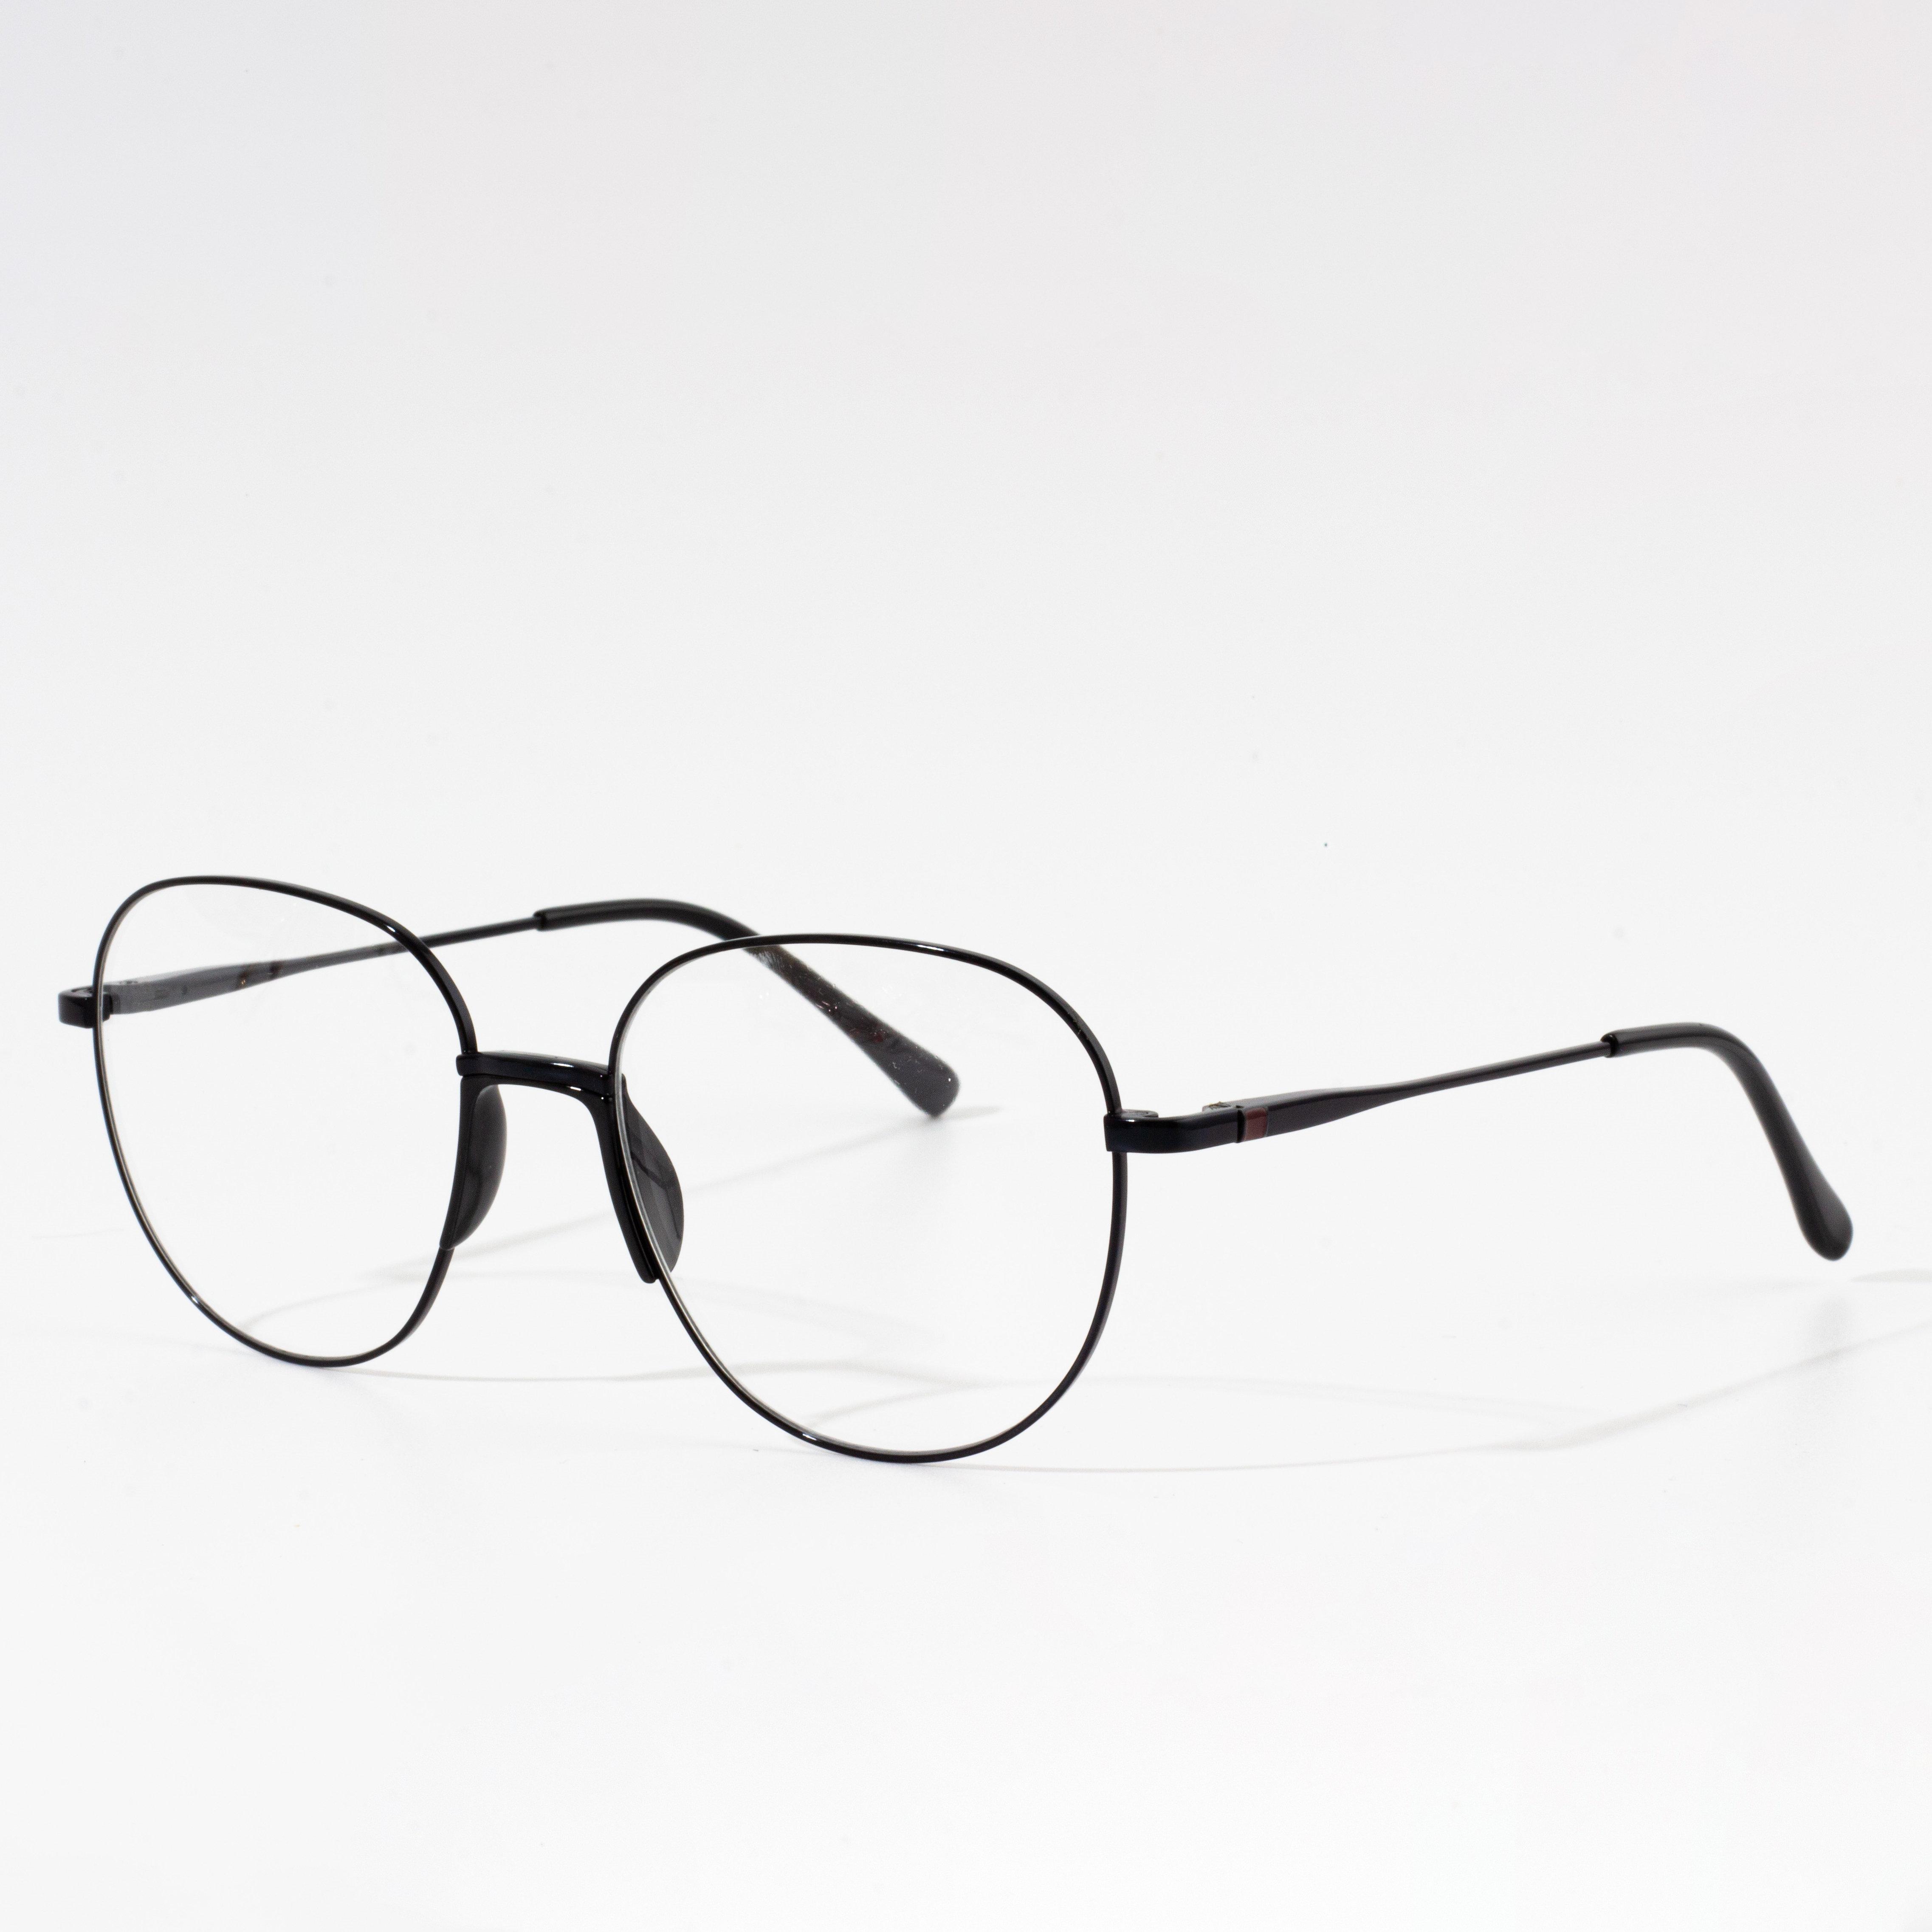 froulju syn ûntwerper bril frames